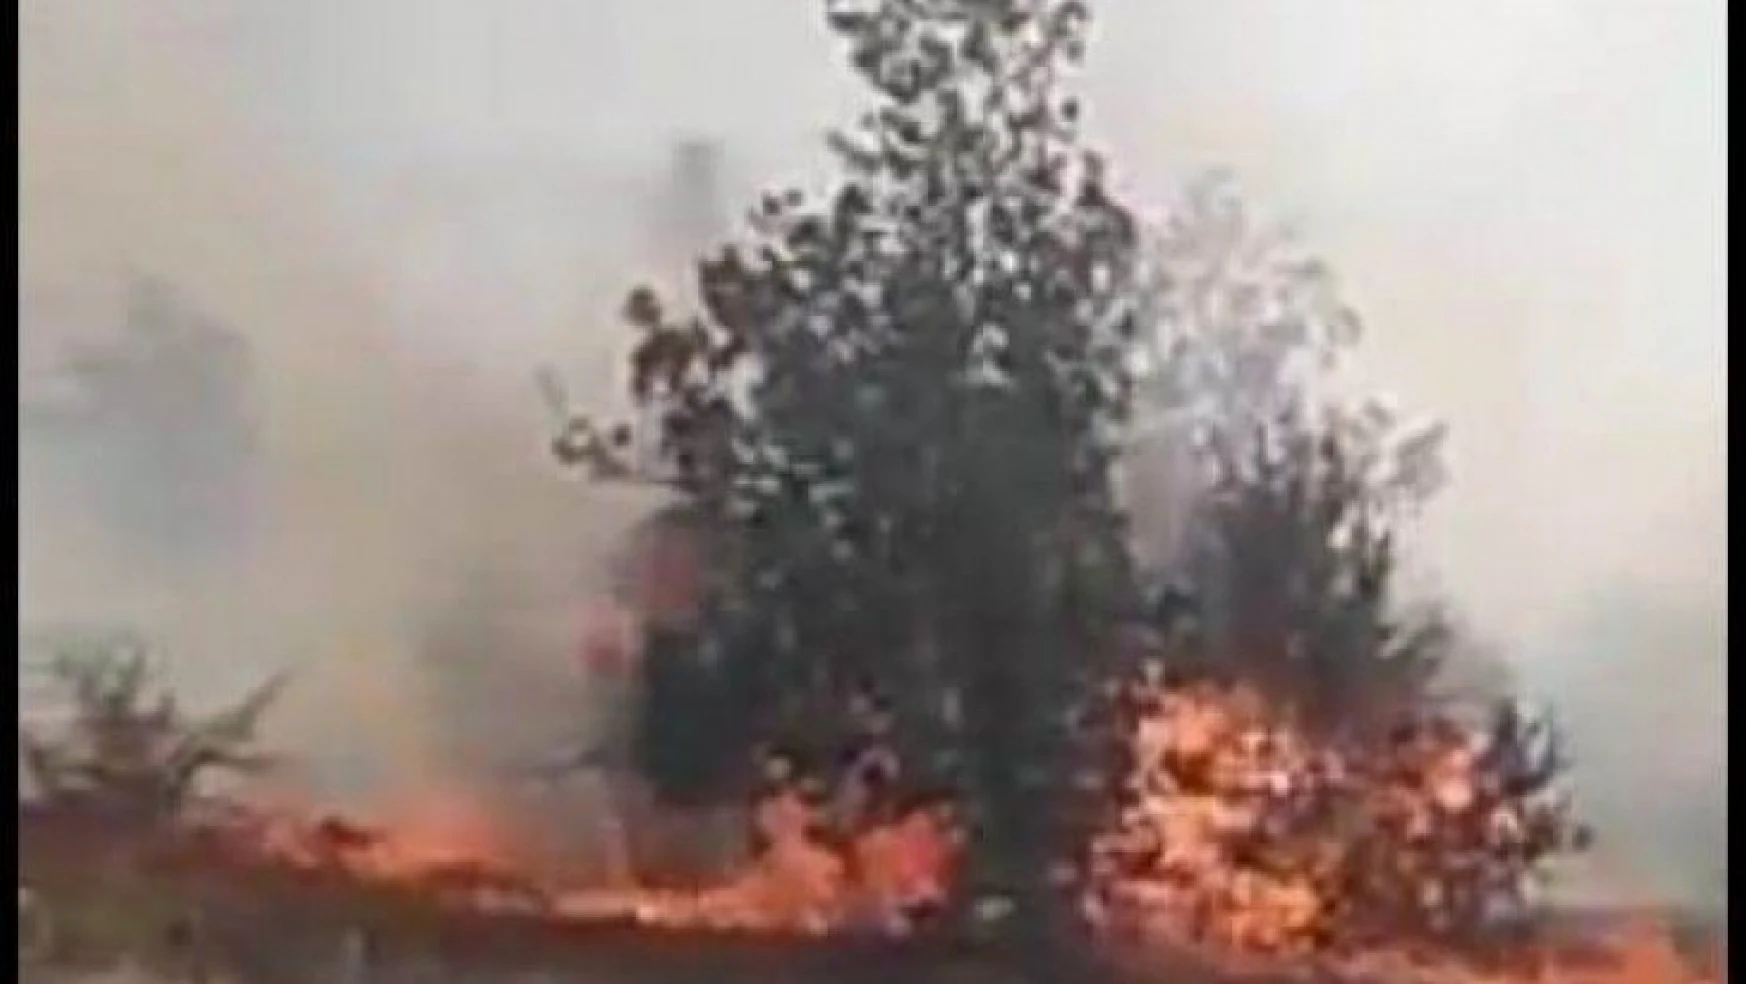 Malatya'da örtü yangını